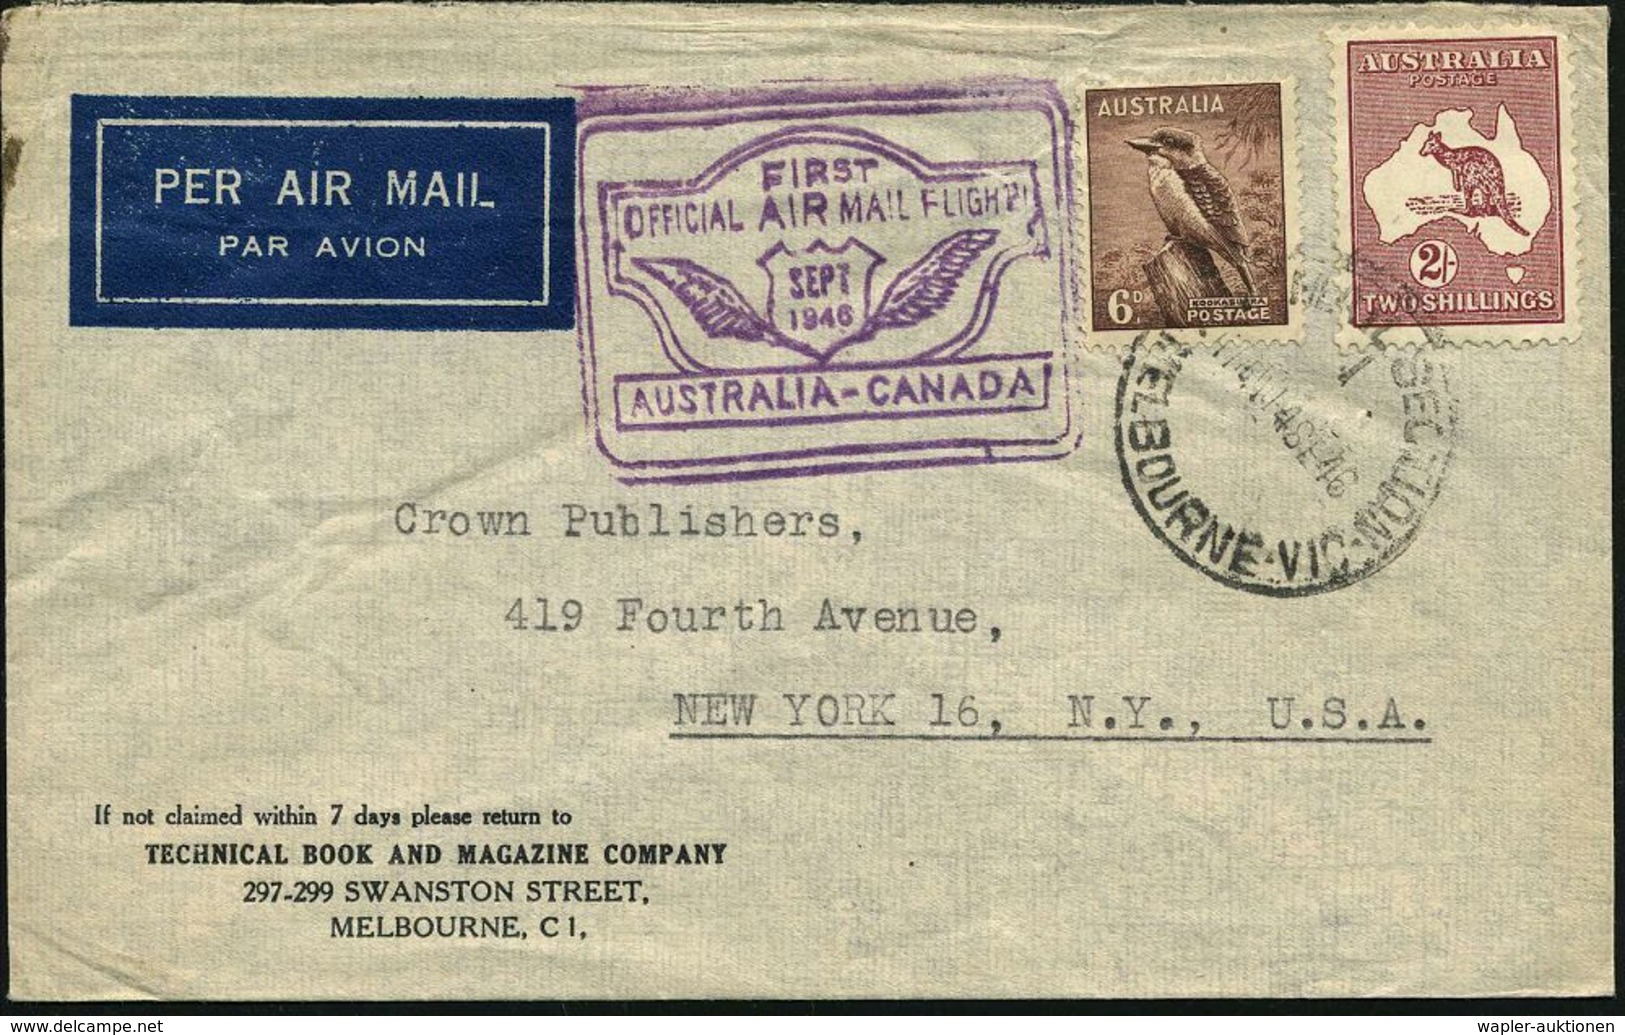 AUSTRALIEN 1946 (15.9.) Erstflug (B.C.P.A.): Australien - Canada, Etappe San Francisco , 1K: MELBOURNE + Viol. Flp.-HdN  - Autres (Air)